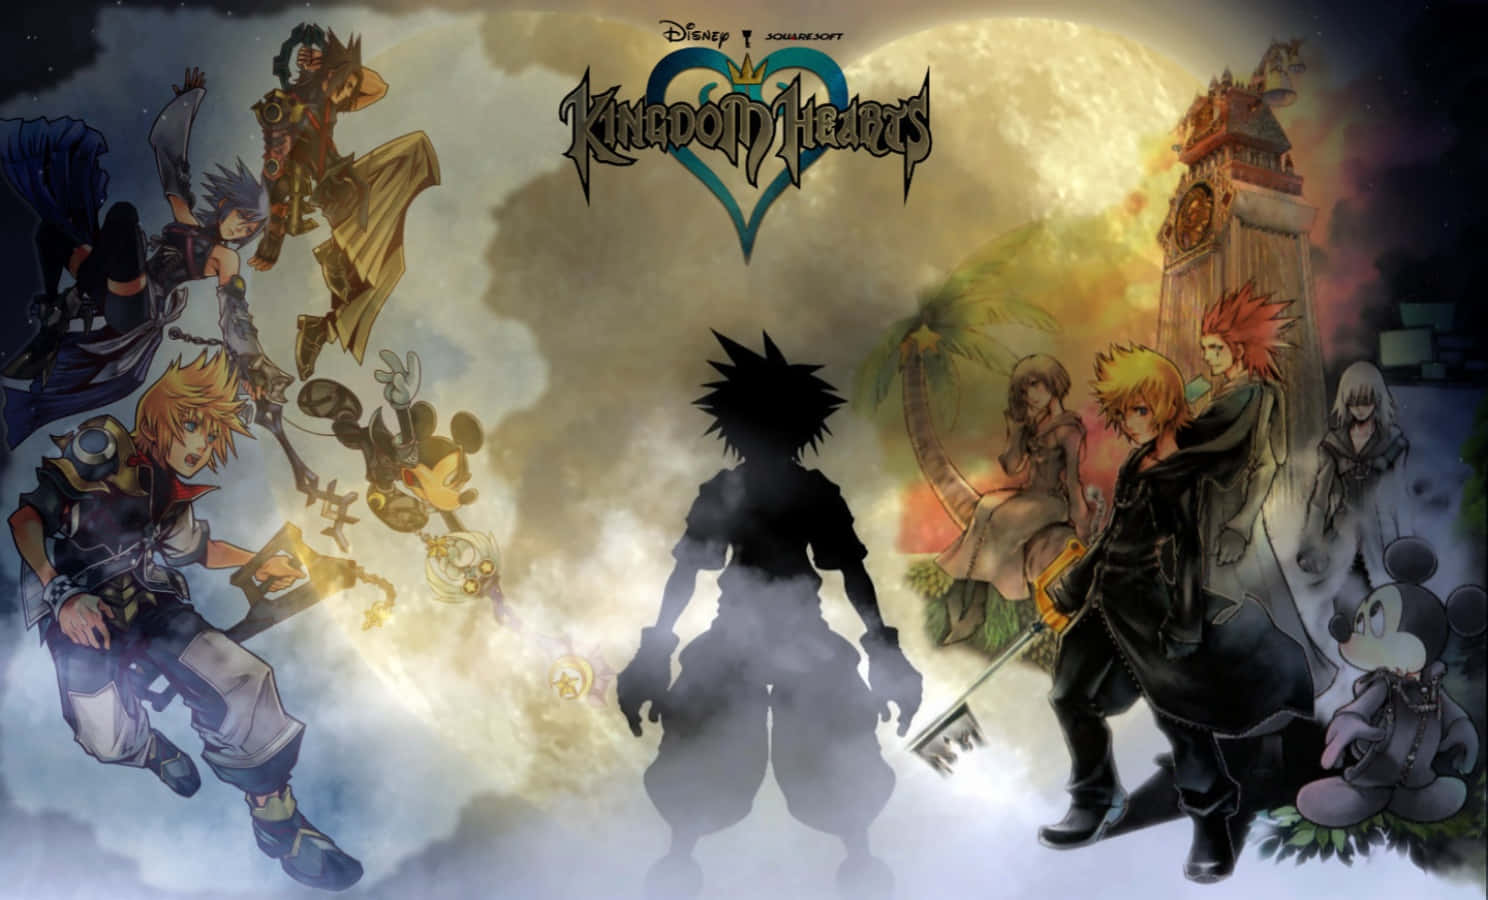 Werdeein Keyblade Meister Im Magischen Land Von Kingdom Hearts.